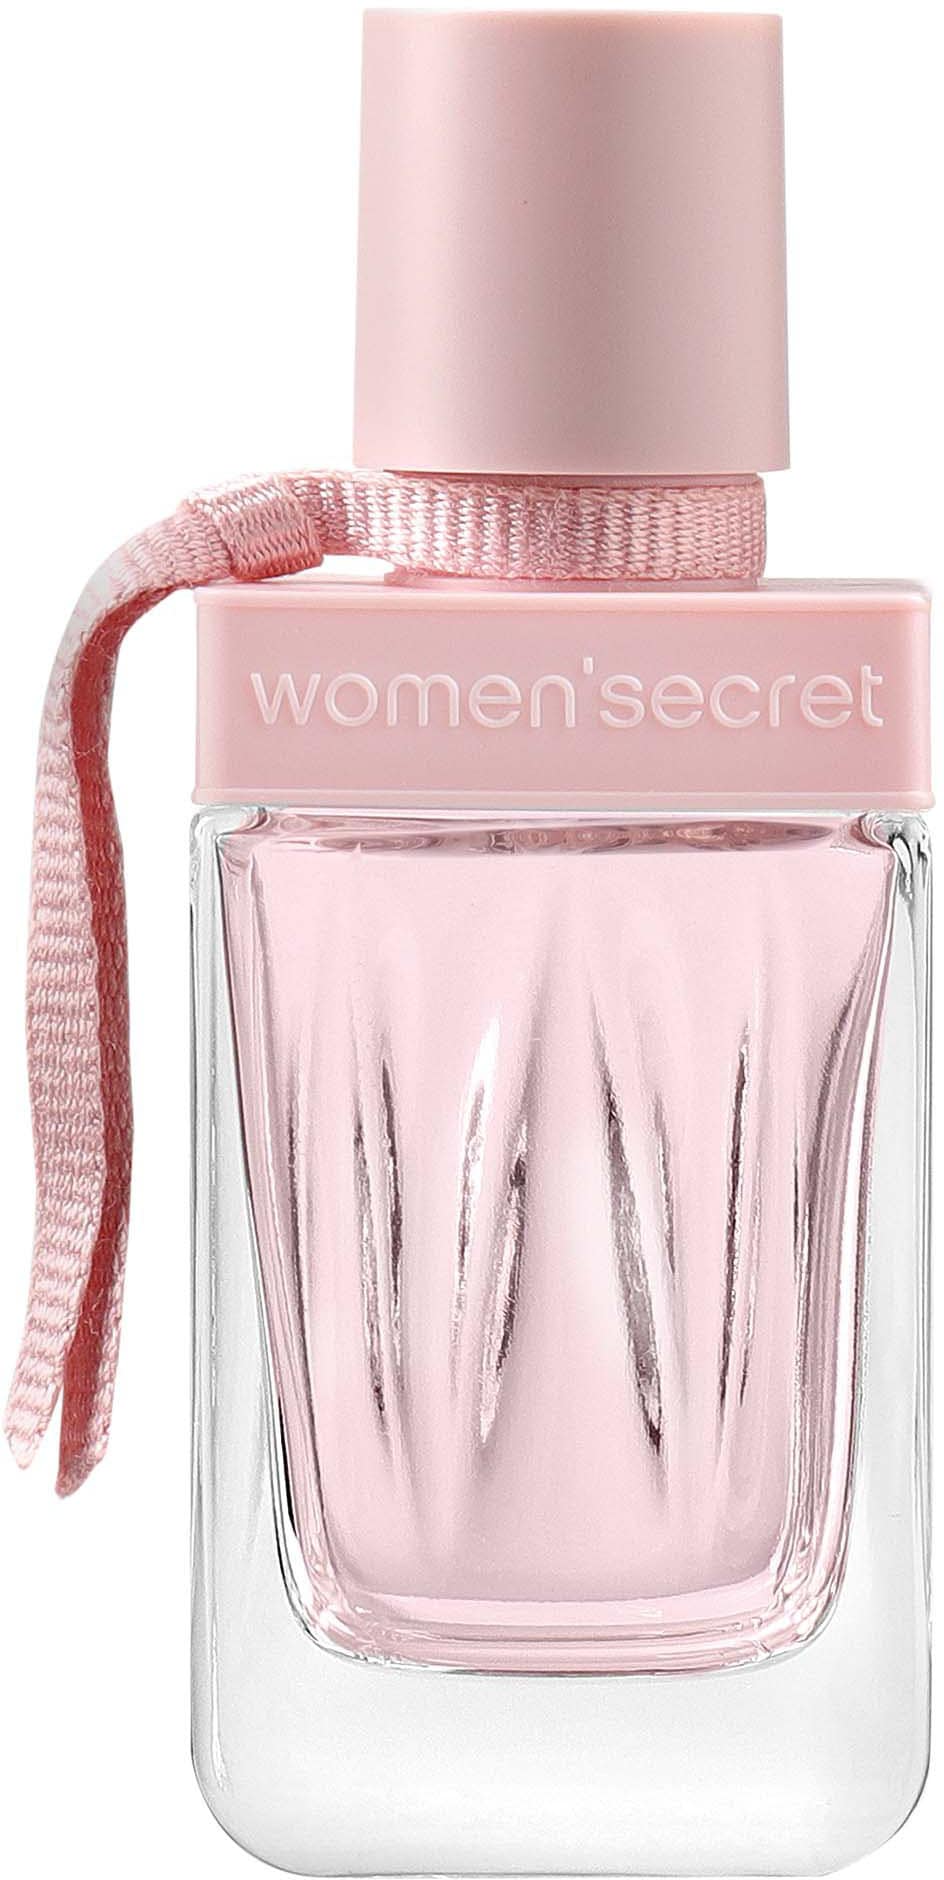 women'secret Eau de Parfum »INTIMATE Eau de Parfum«